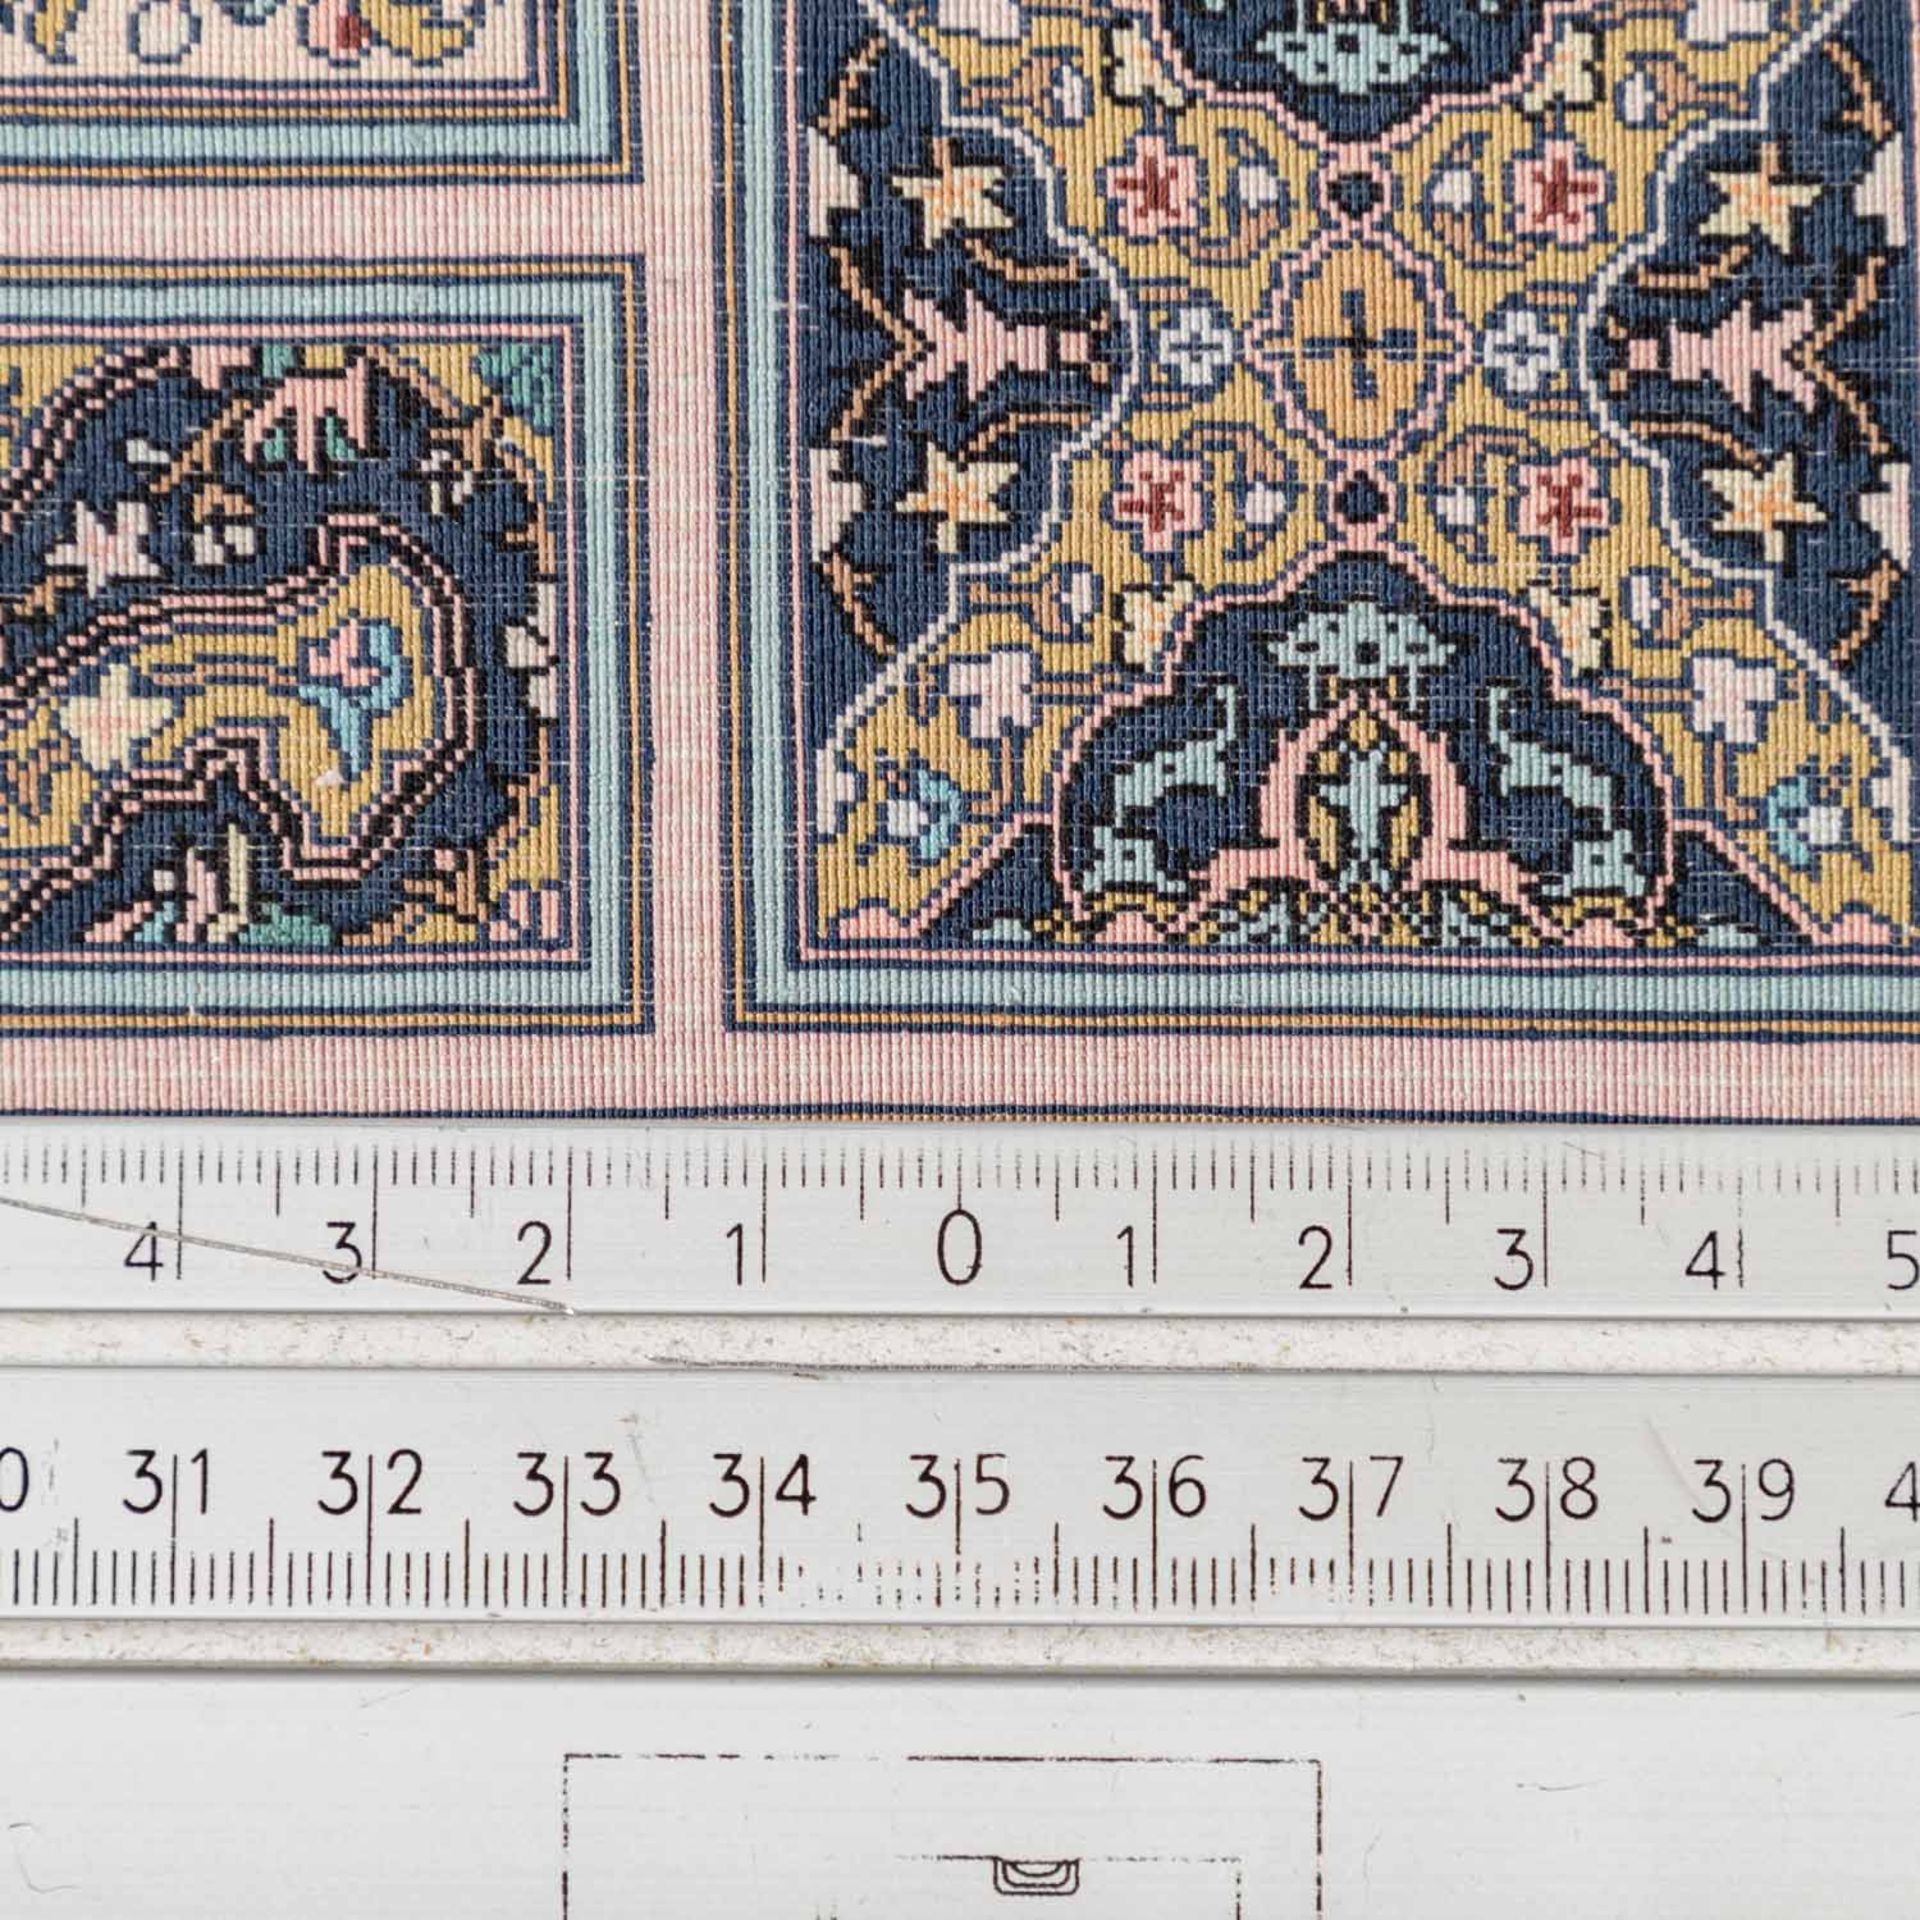 Feinster Teppich aus Seide. TÜRKEI, 20. Jh., 61x47 cm. - Image 3 of 3